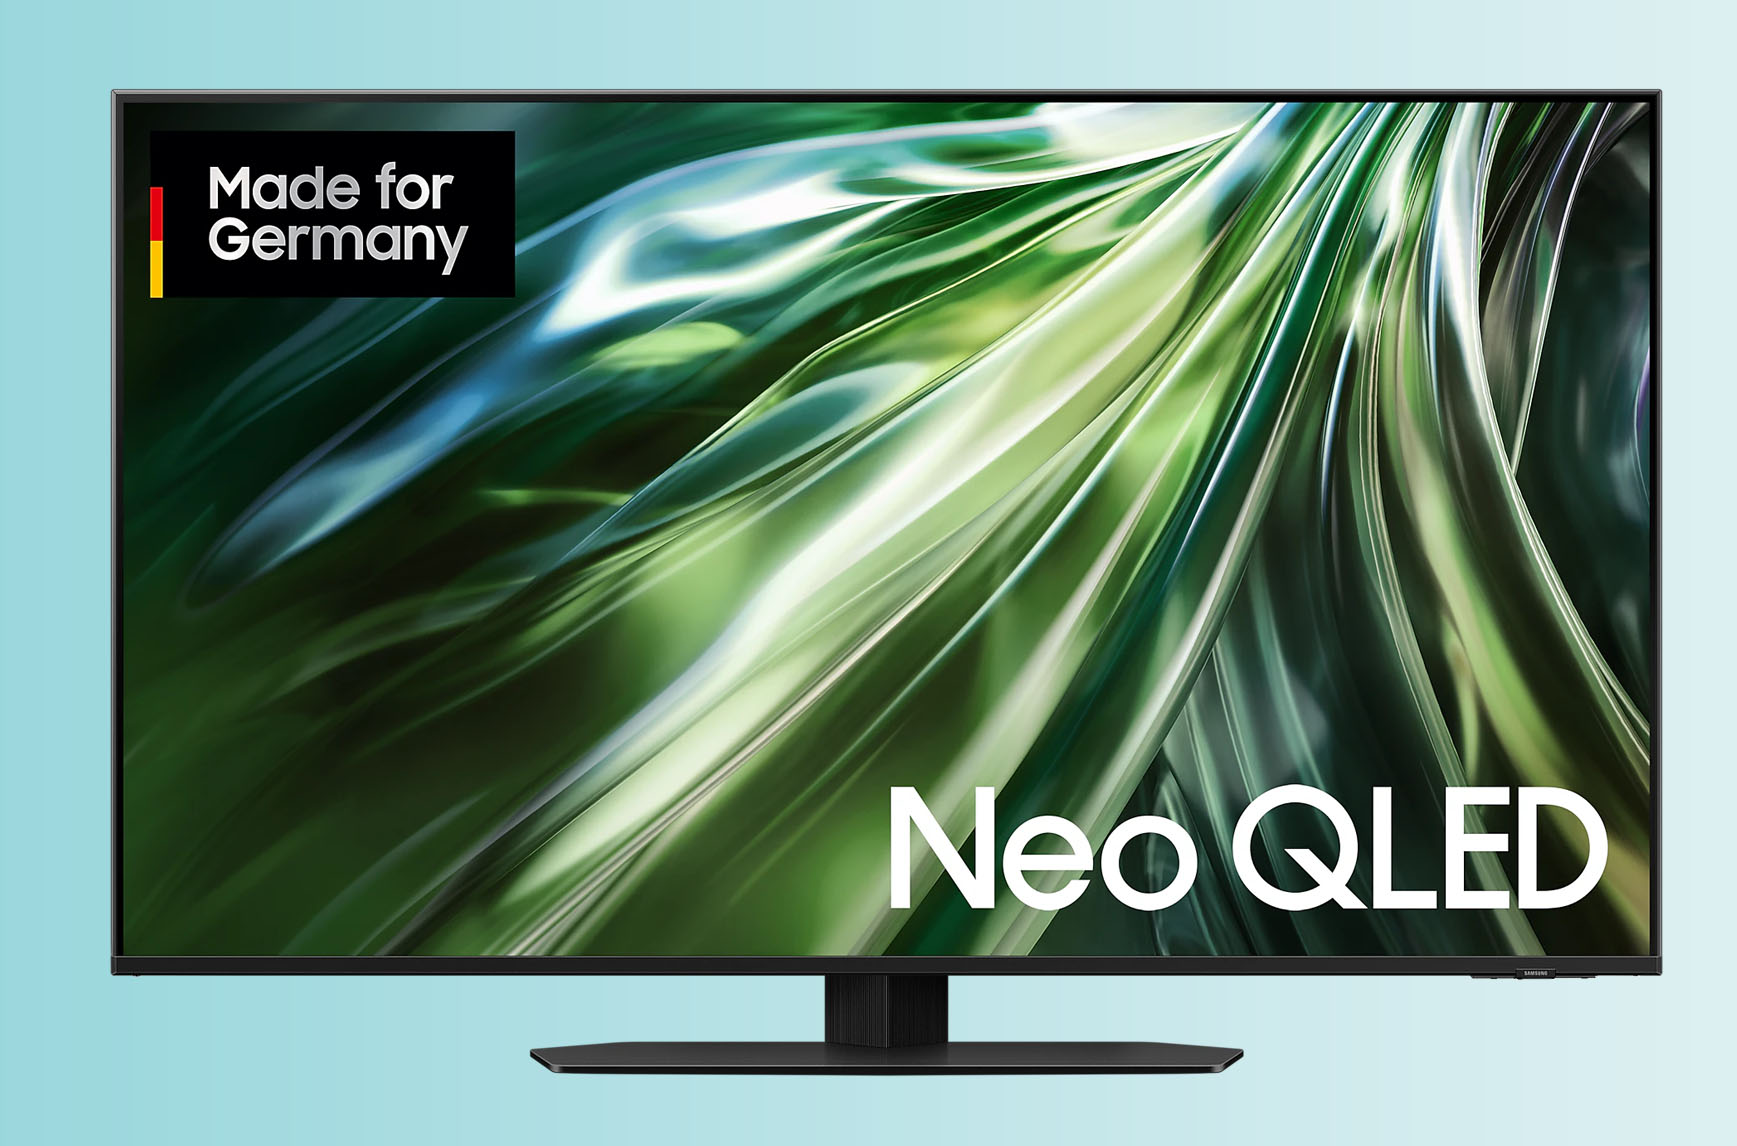 Mit einer Bilddiagonale von 43 Zoll bzw. 108 cm ist der Samsung GQ43QN90D der kleinste Fernseher mit Mini LED-Technik.